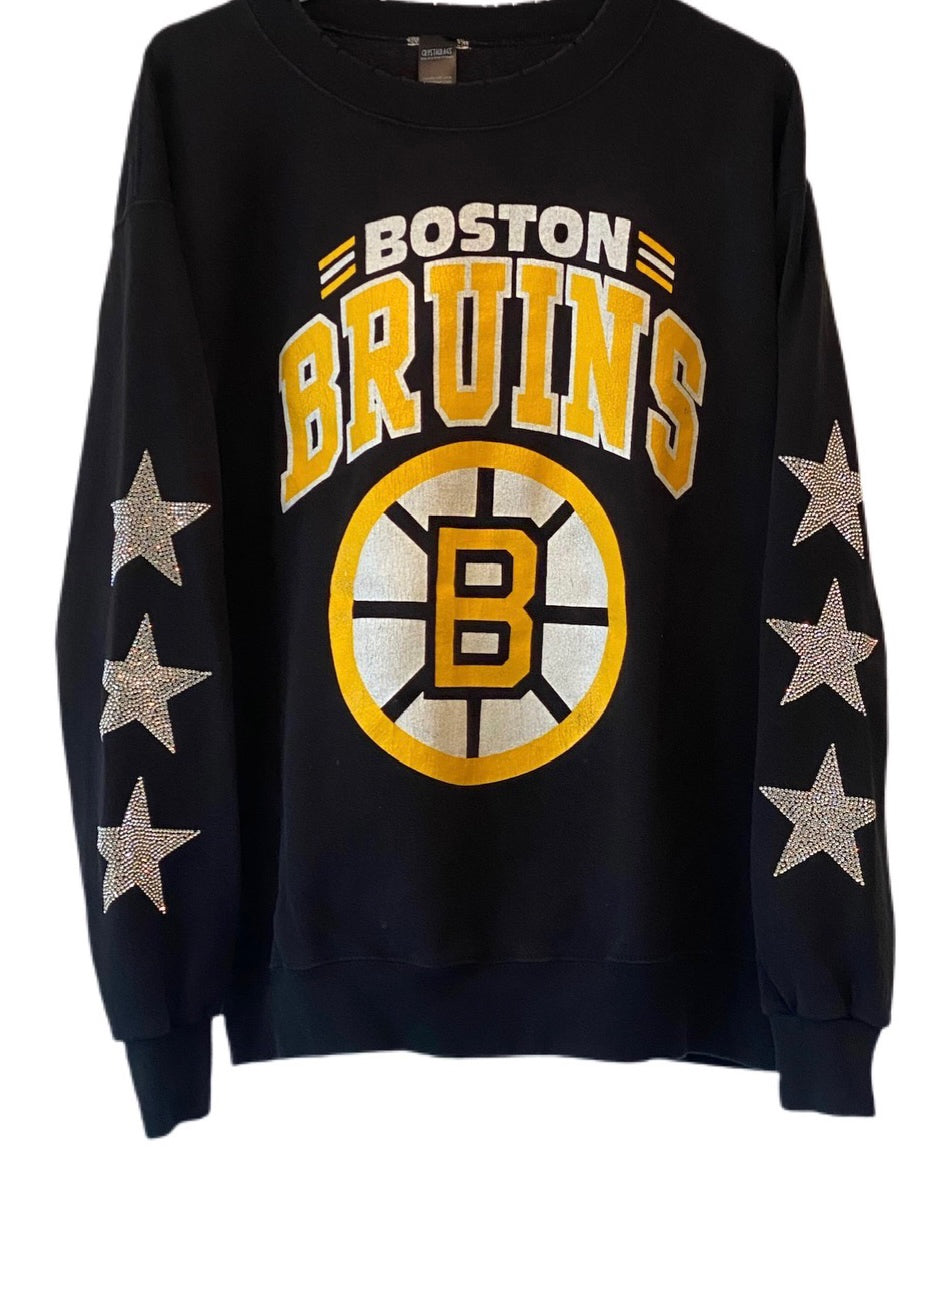 Boston Bruins, NHL One of a KIND Vintage Sweatshirt with Three Crystal Stars Design, Custom Crystal Number